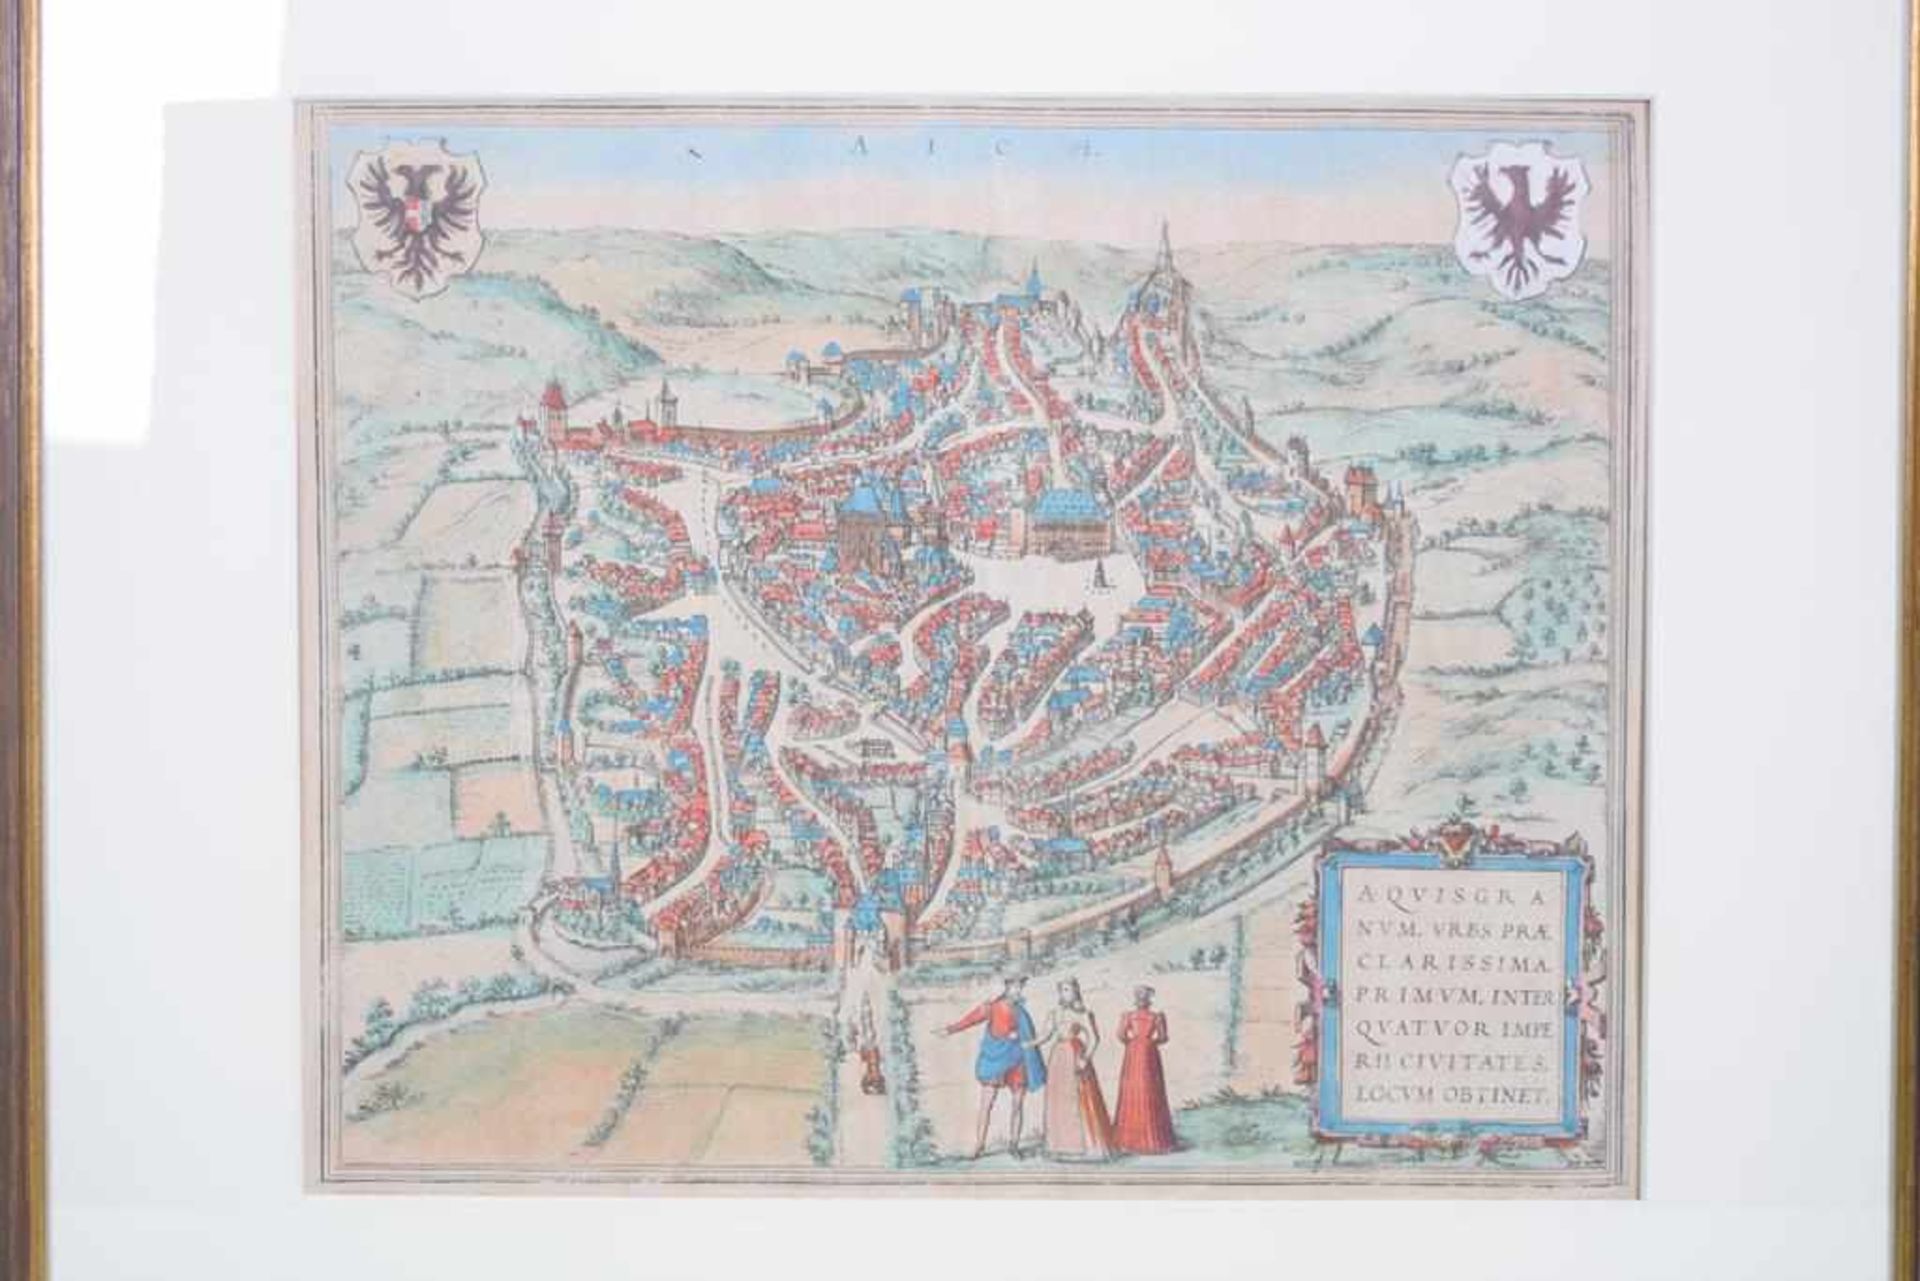 Alte Kolorierte Grafik "Aich" Aquisgra um 1600Stadtansicht Aachen um 1600, Kolorierte Grafik, Aich